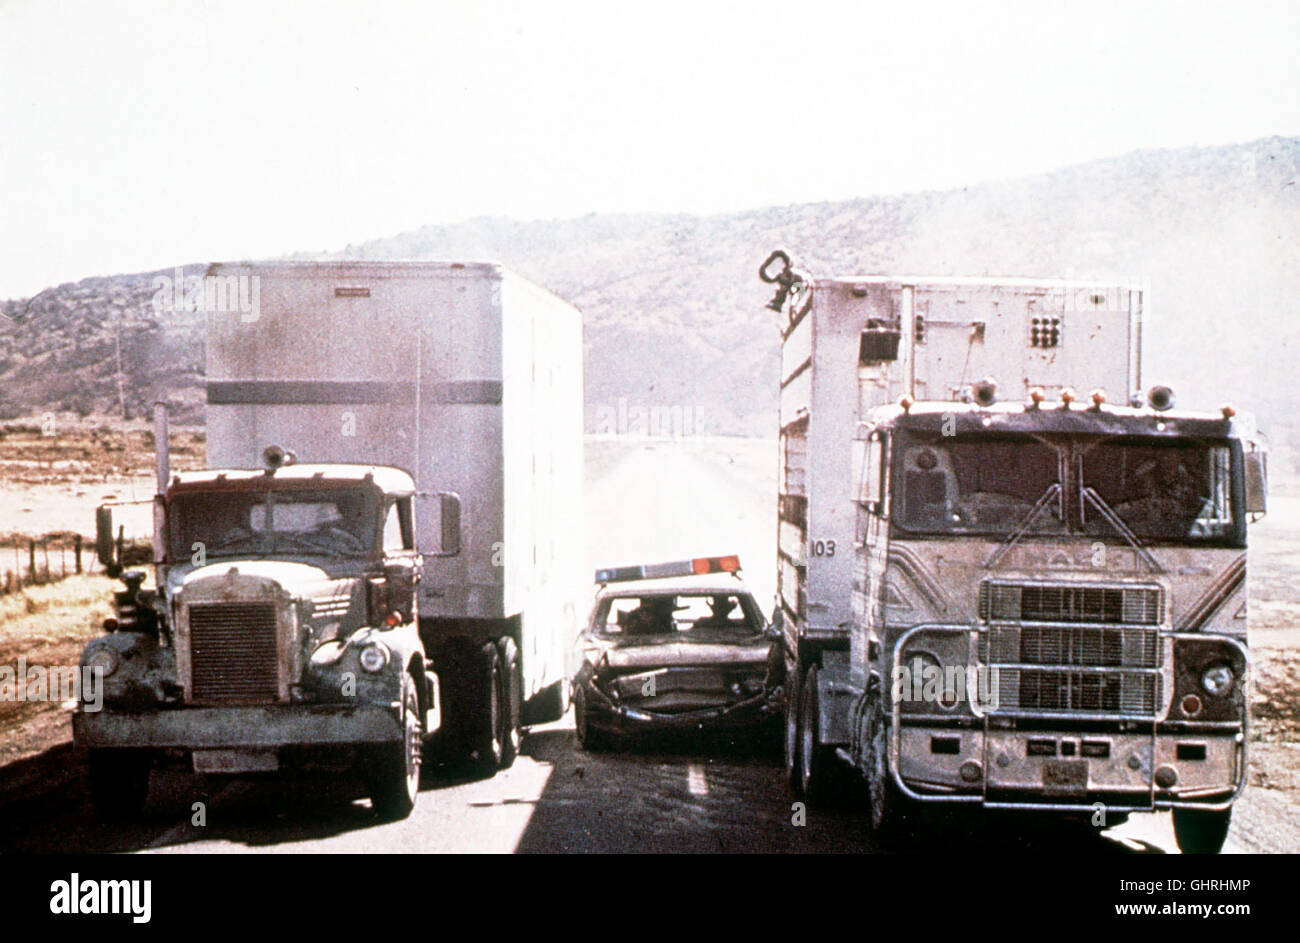 convoy - Truck-Fahrer Rubber-Duck wird unfreiwillig zum Führer einer  Fernfahrer-Revolte gegen die verbürgerlichte US-Gesellschaft. Szene Regie:  Sam Peckinpah aka. Convoy Stock Photo - Alamy